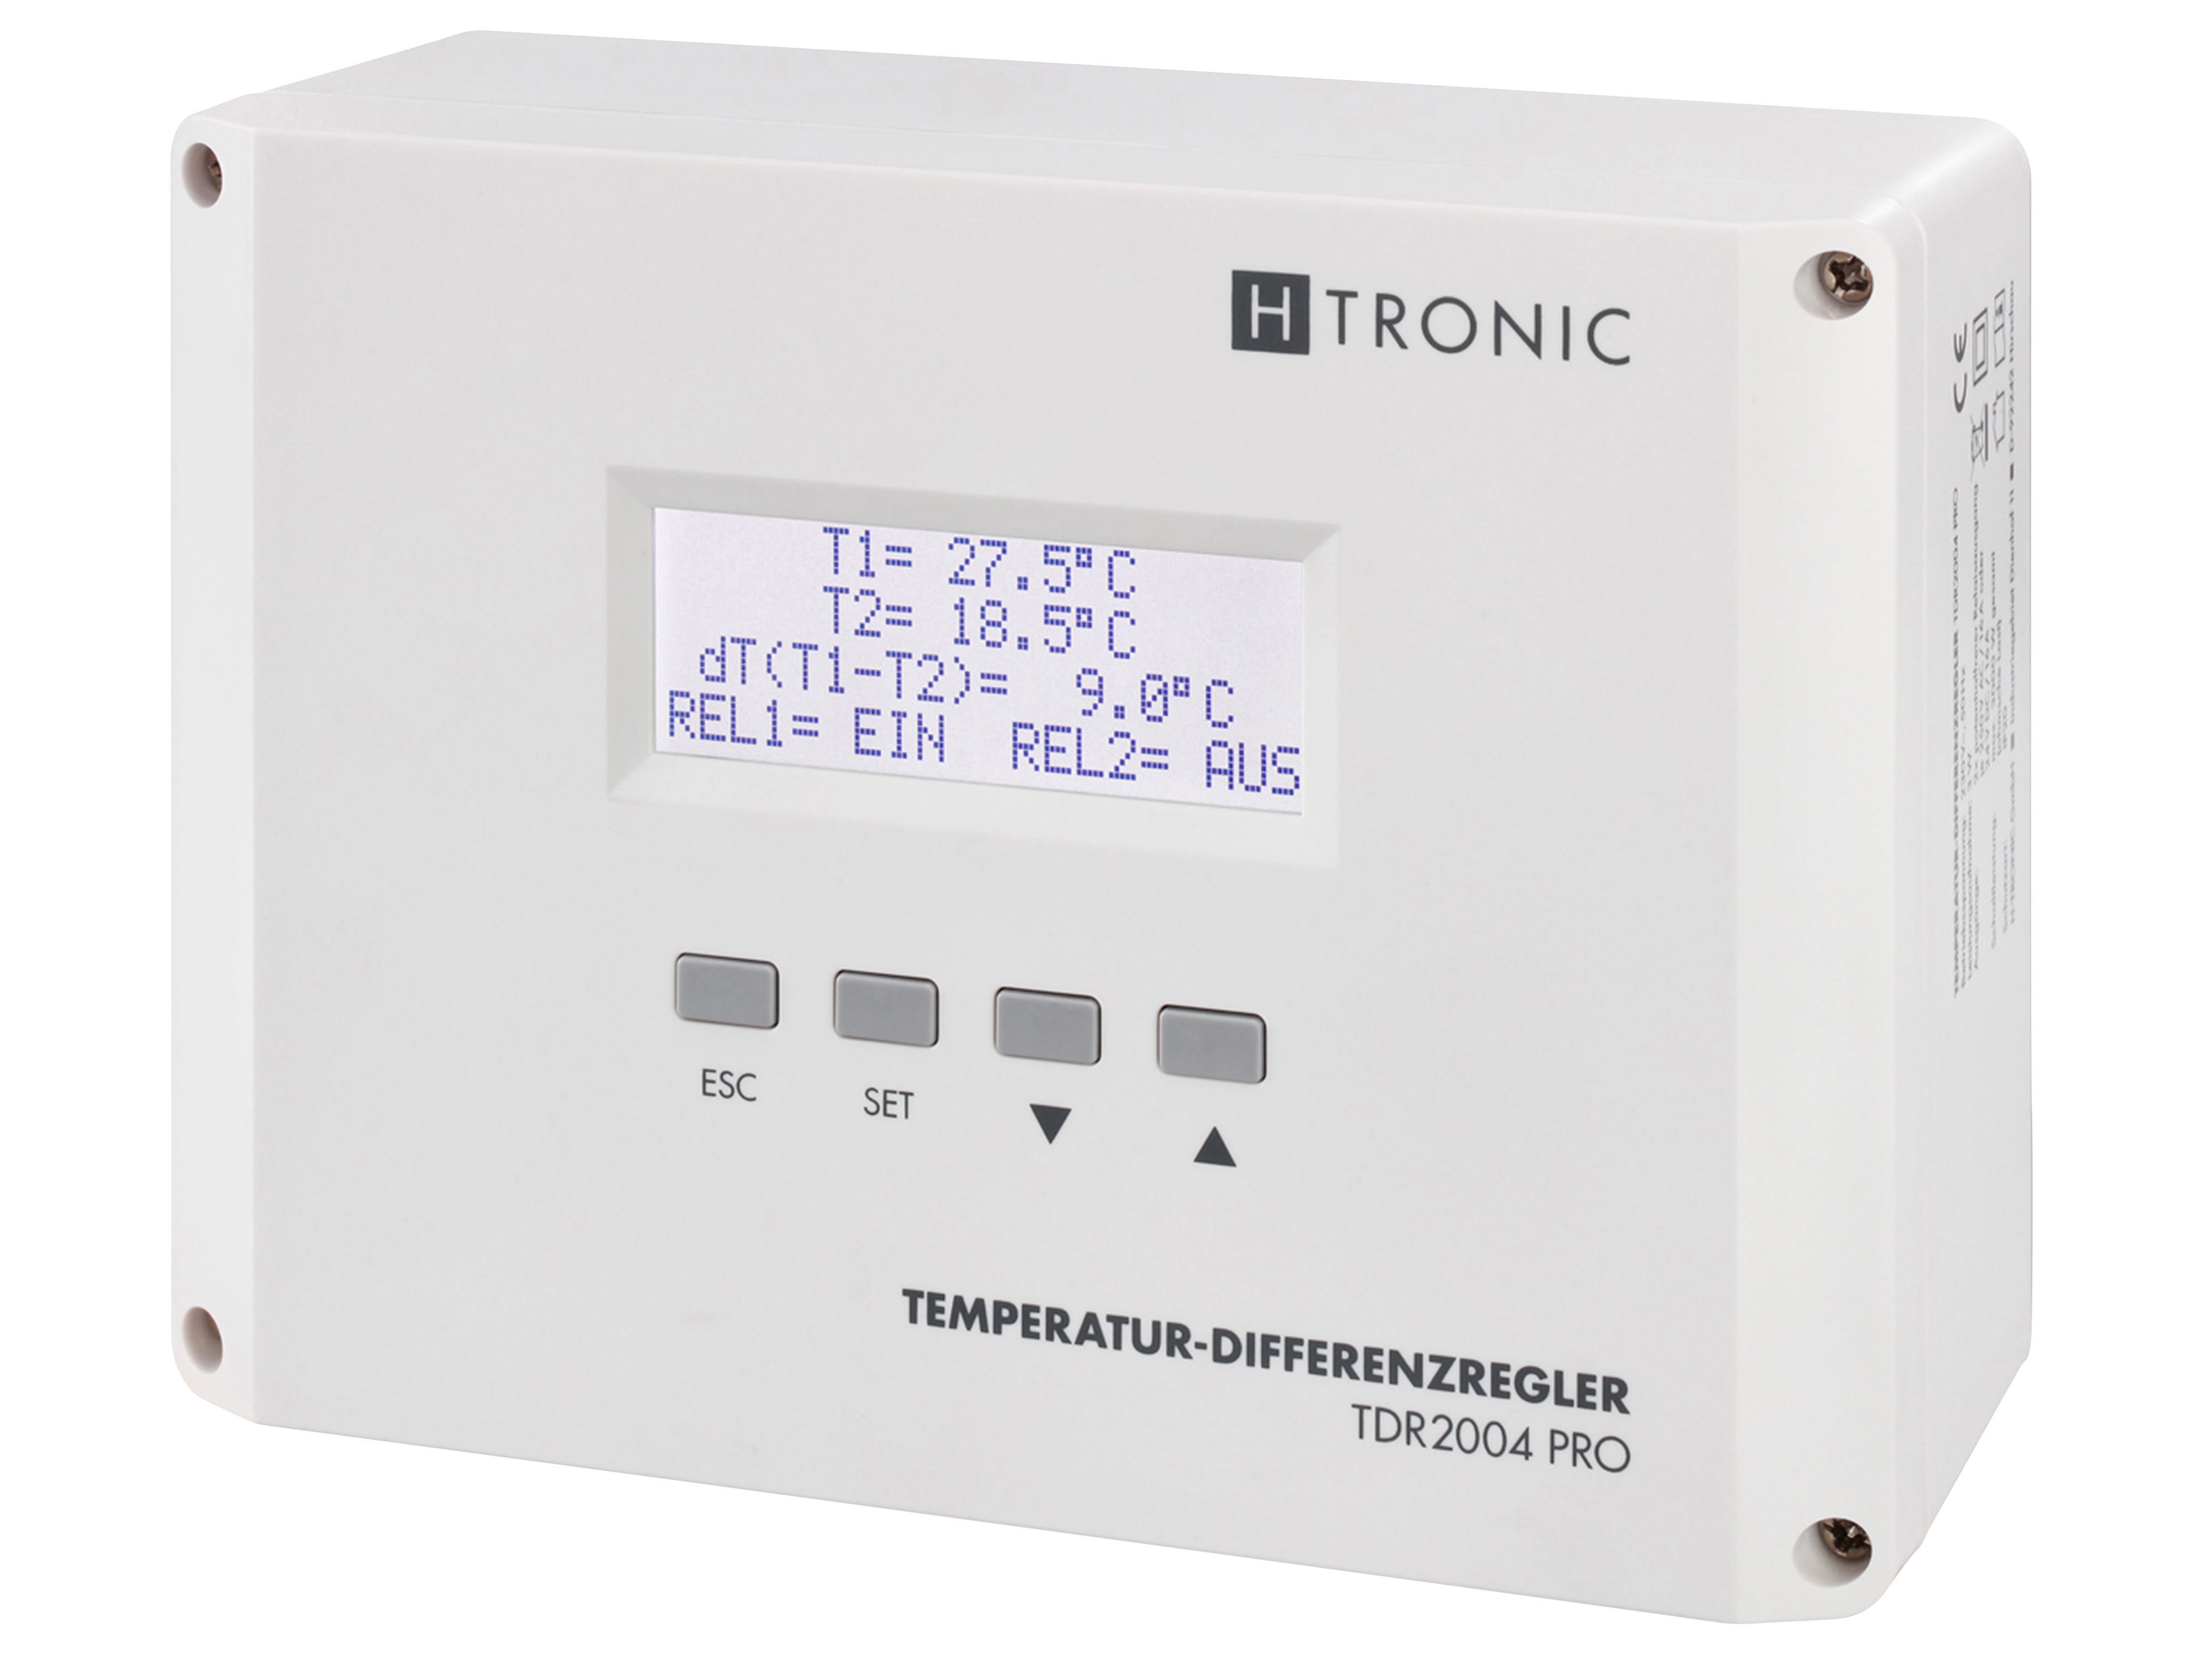 H-TRONIC Temperatur-Differenzregler TDR2004 pro, weiß